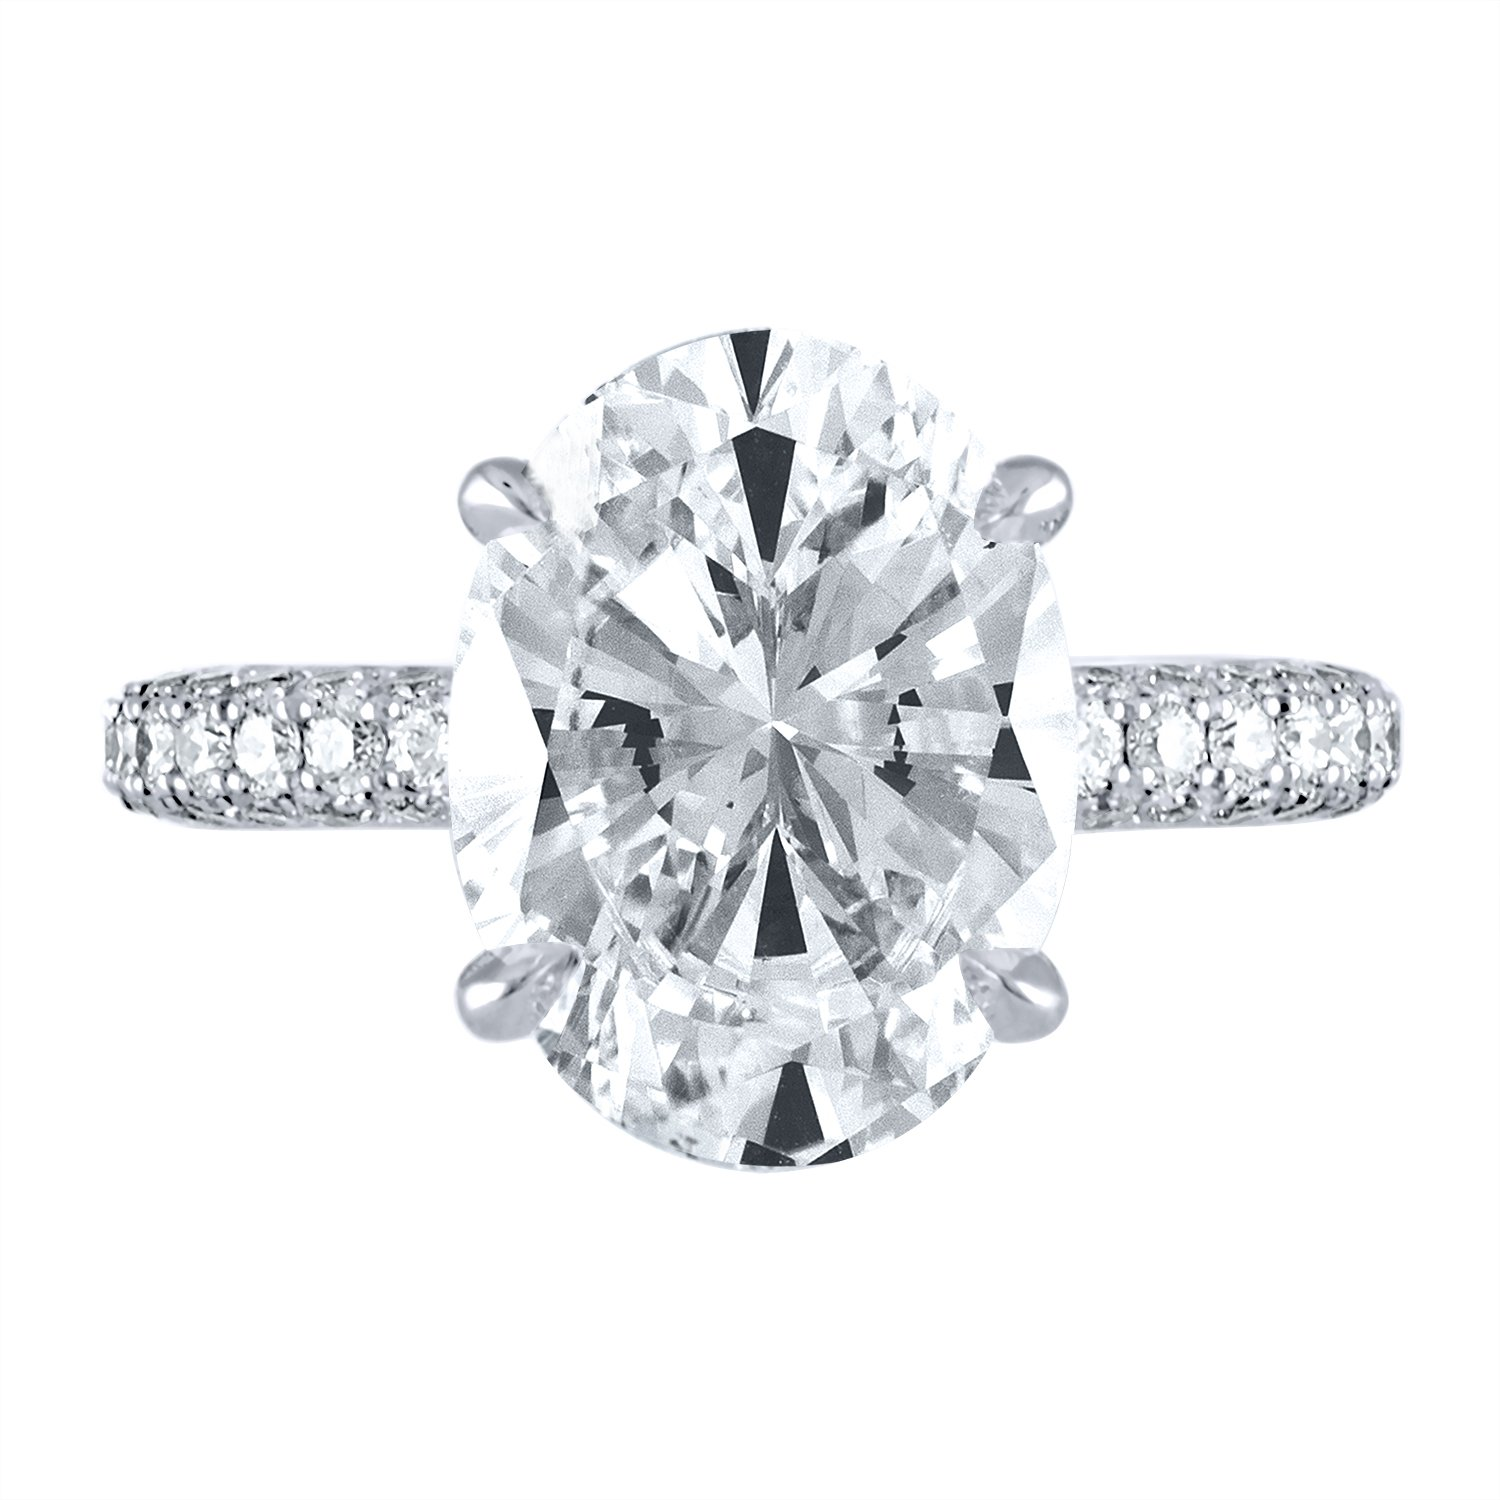 Celine Custom Engagement Ring | Forever Diamonds | New York, NY